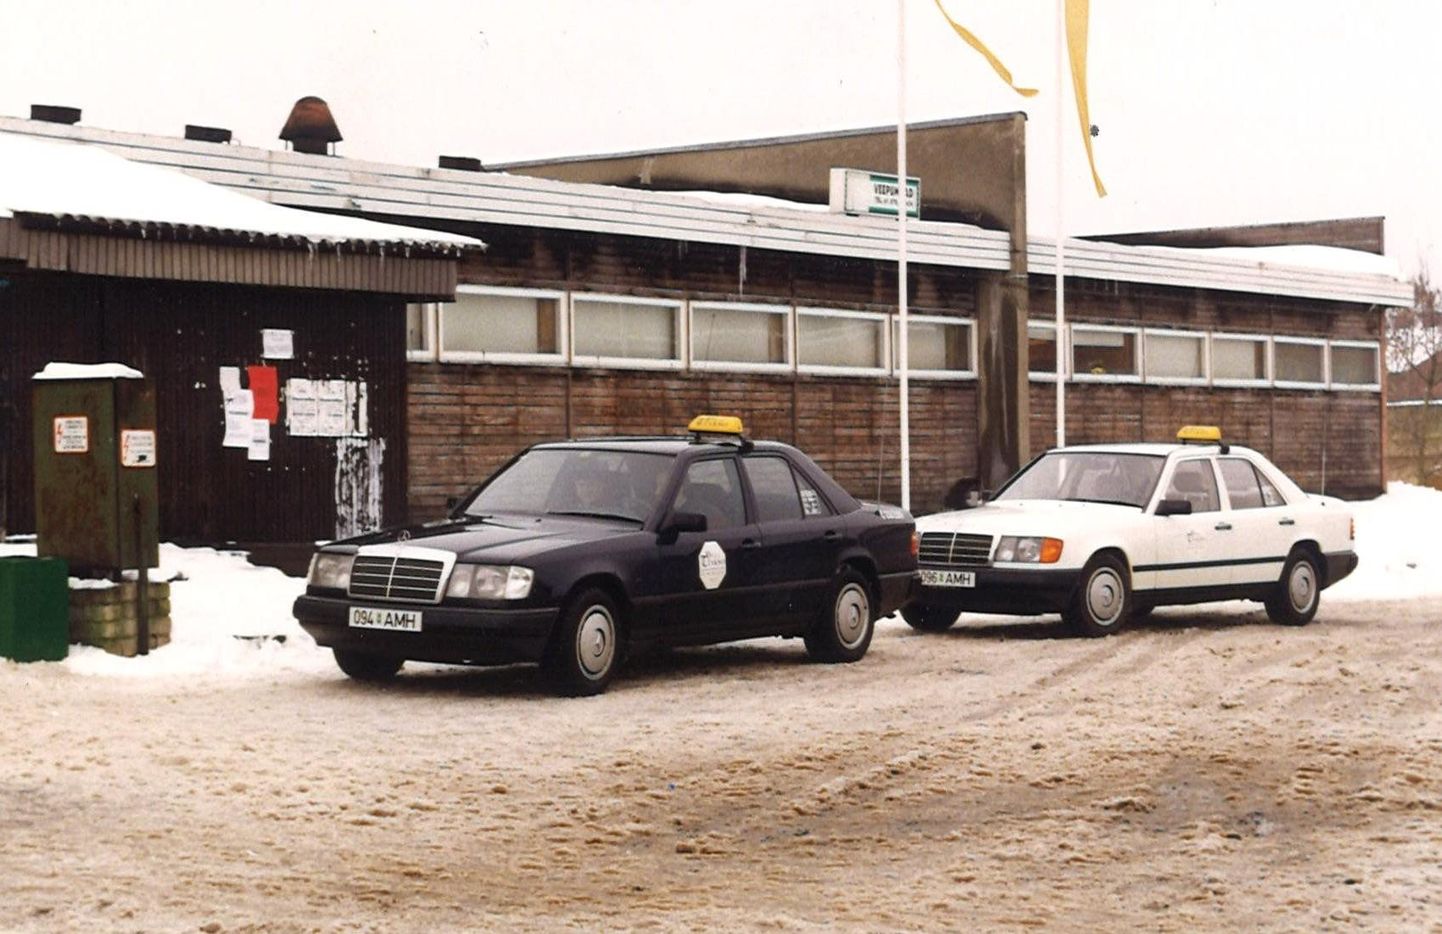 Rakvere taksod. Foto on tehtud 1997. aastal ja need autod pole antud looga seotud.